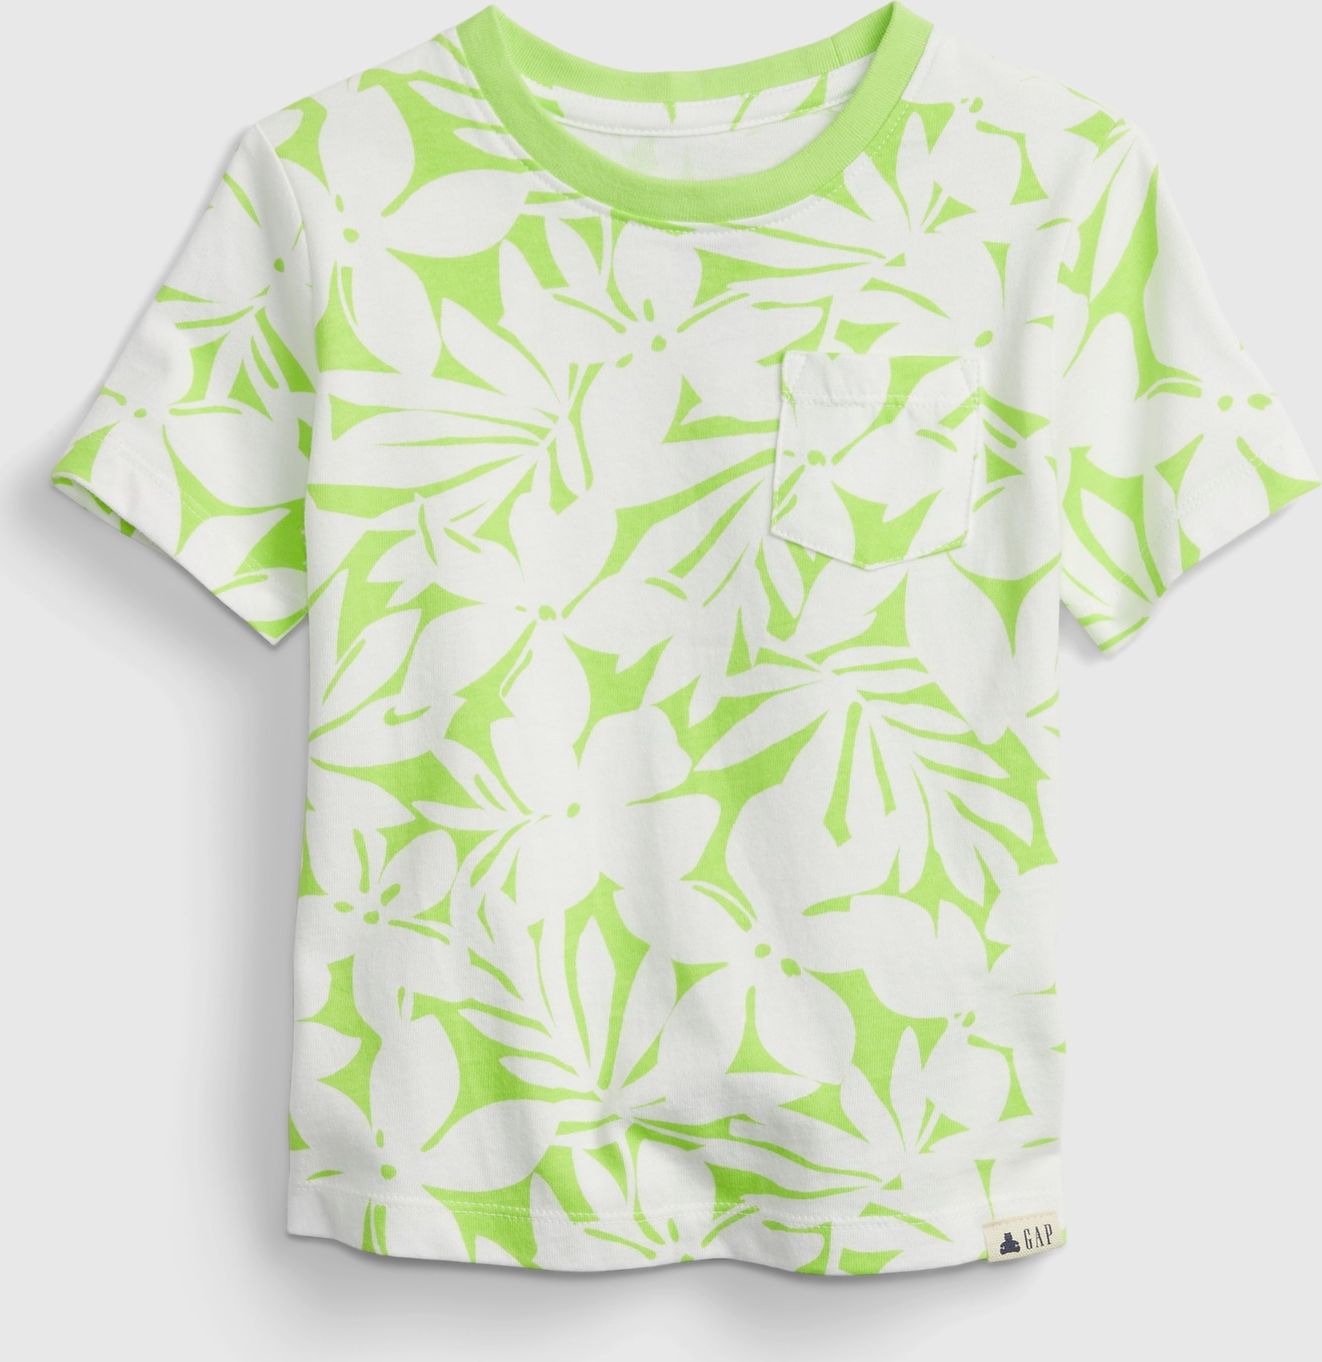 GAP zelené dětské tričko 100% organic cotton mix and match t-shirt - 2YRS - obrázek 1